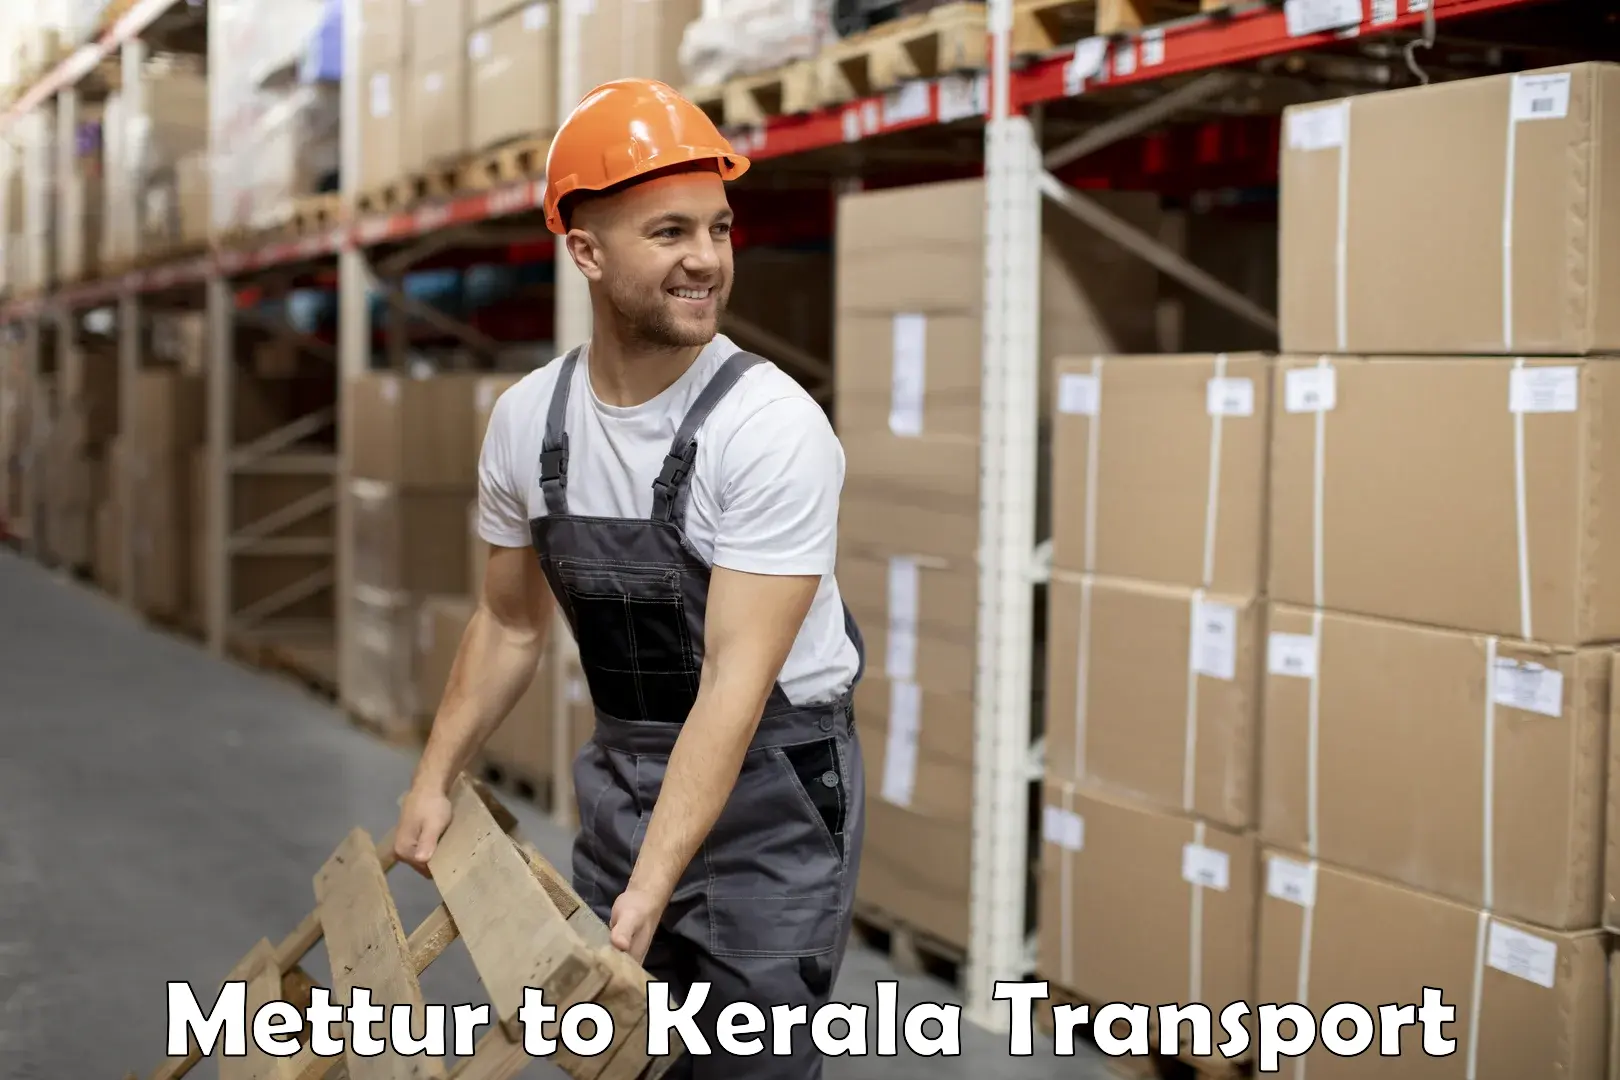 All India transport service Mettur to Kalluvathukkal